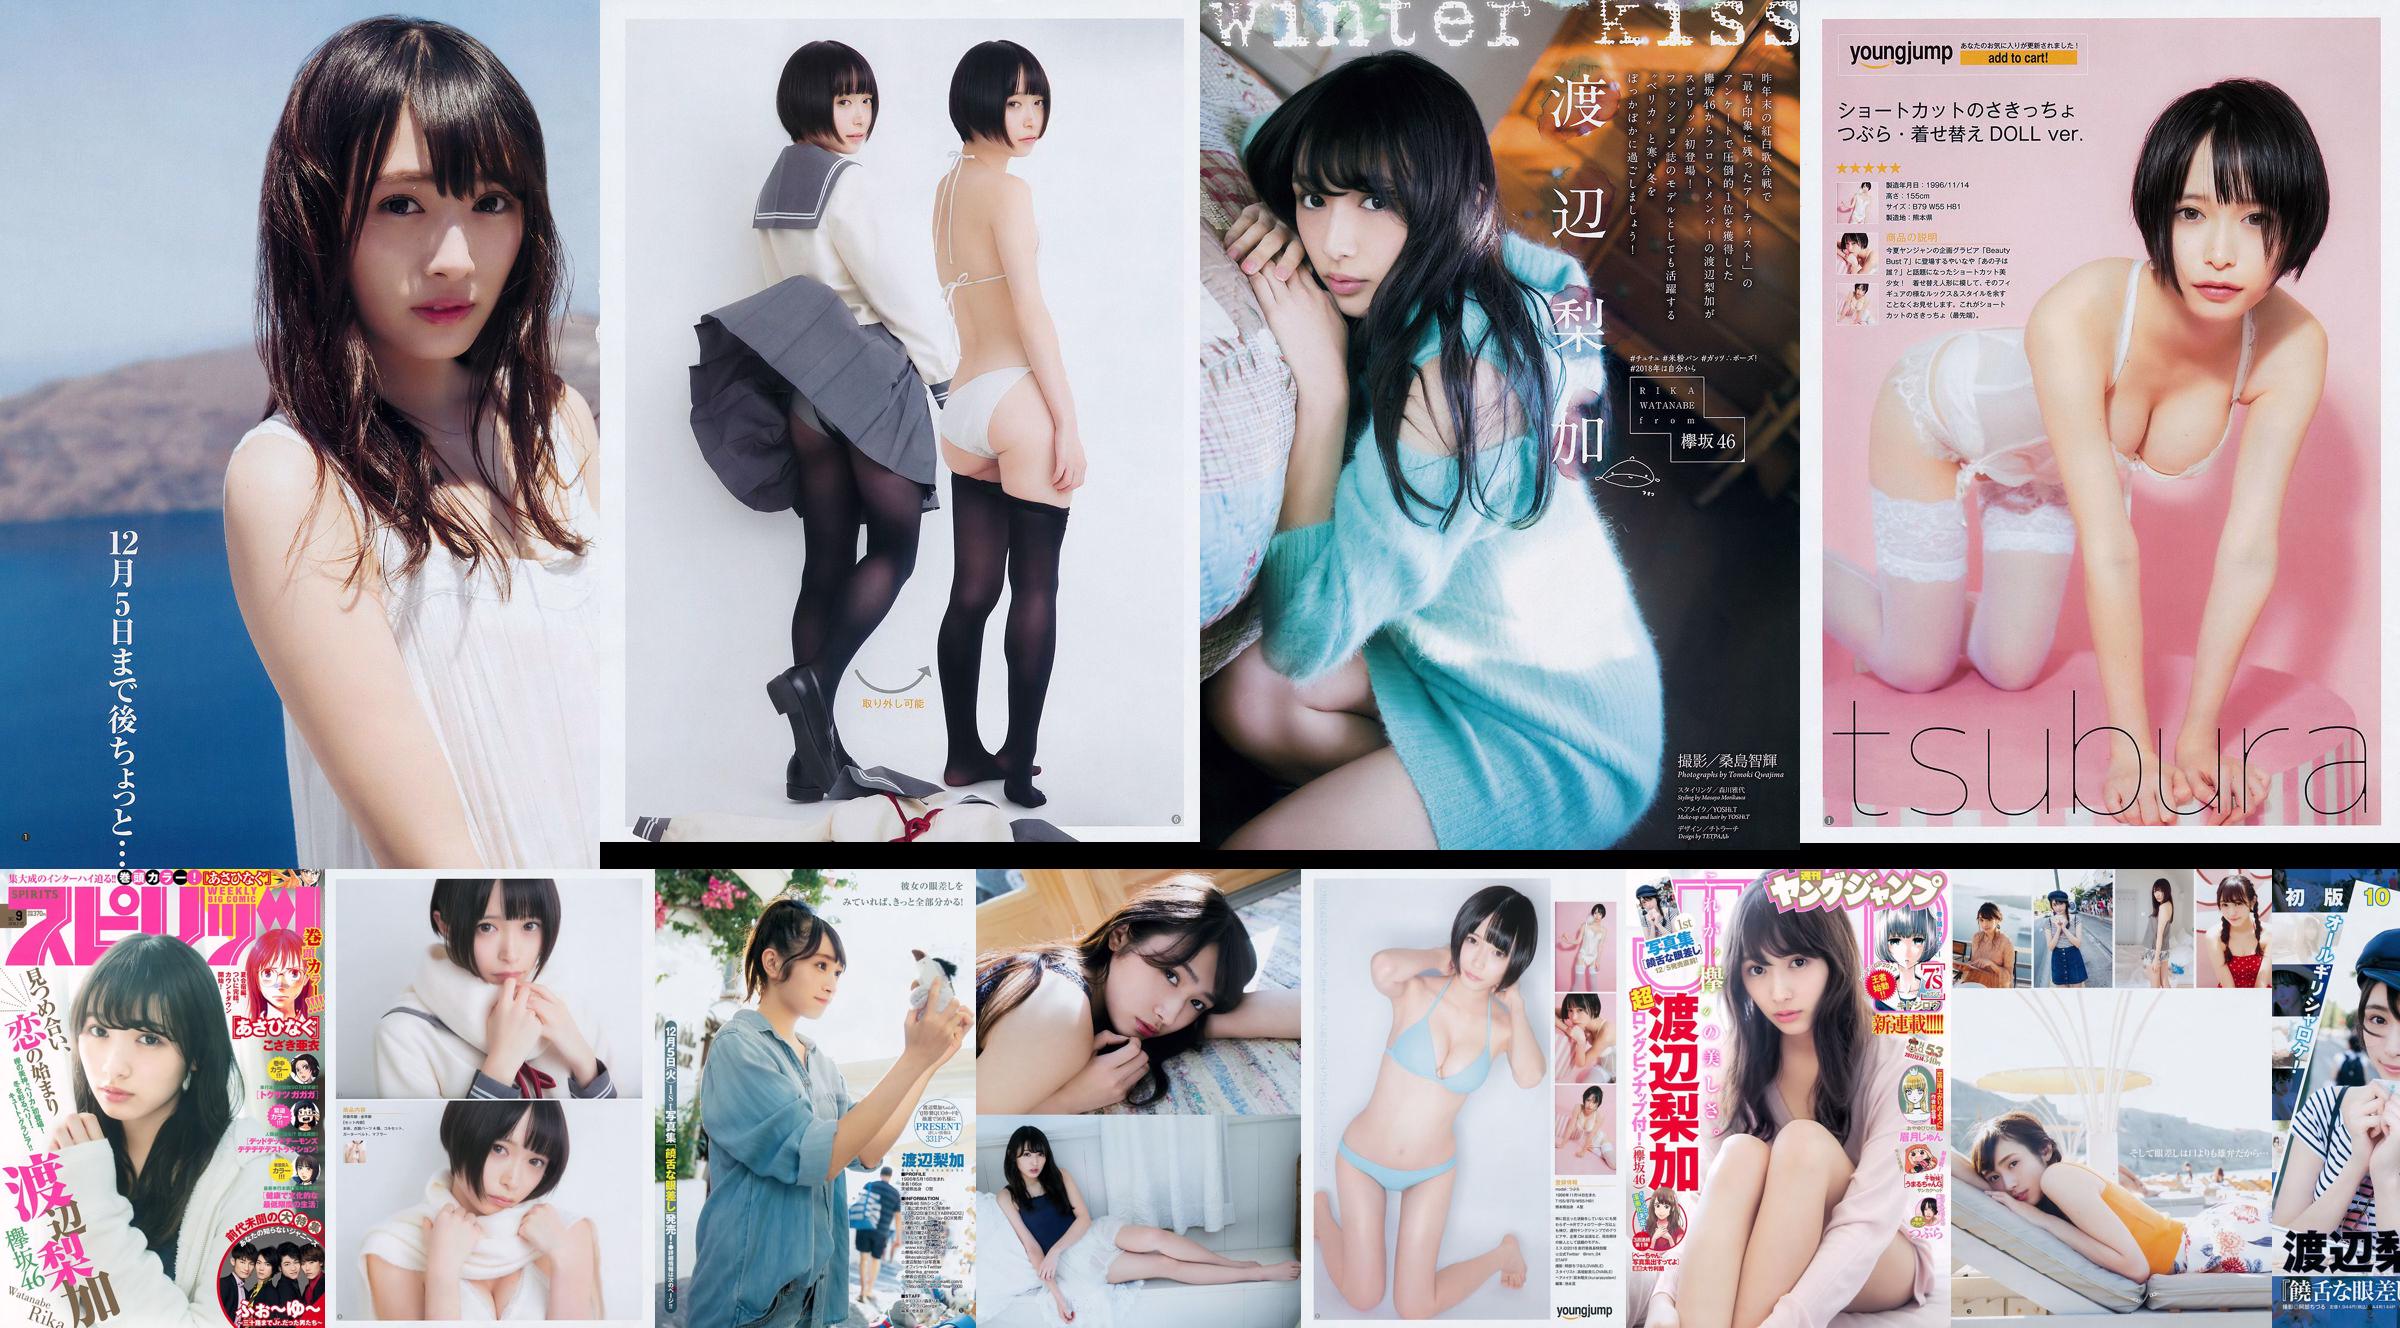 [Wöchentliche große Comic-Geister] Rika Watanabe 2018 No.09 Photo Magazine No.9a43ba Seite 2